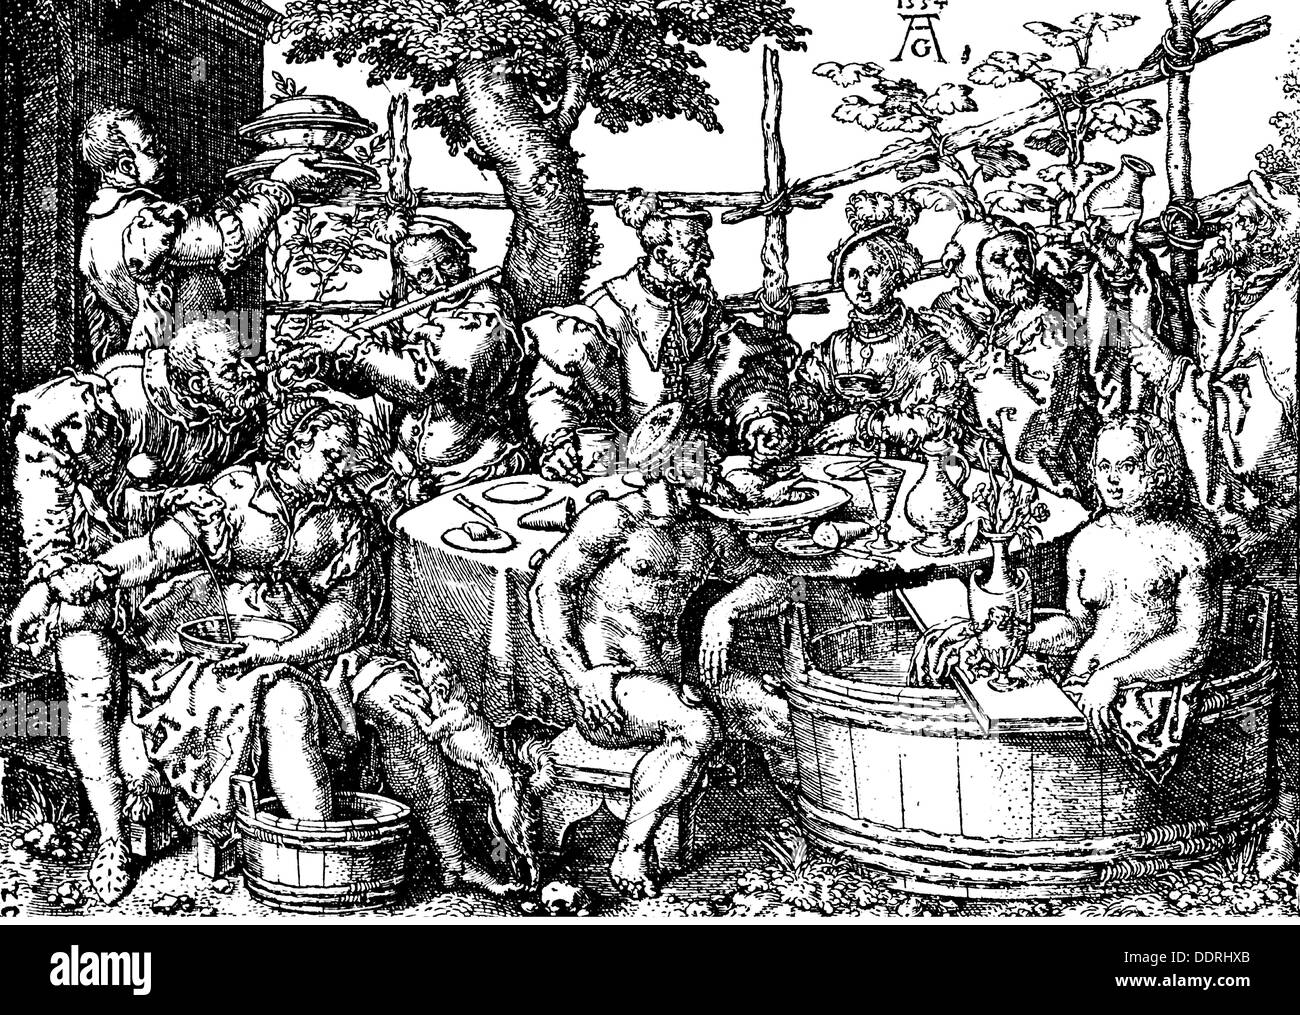 La medicina, el tratamiento, la sangría / venesection, bloodleeting, sudoración, catación y bañarse, grabado en cobre por Heinrich Aldegrever (1502 - 1555 / 1561), a partir de: '6 res non naturales', 1554, Copyright del artista no ha de ser borrado Foto de stock